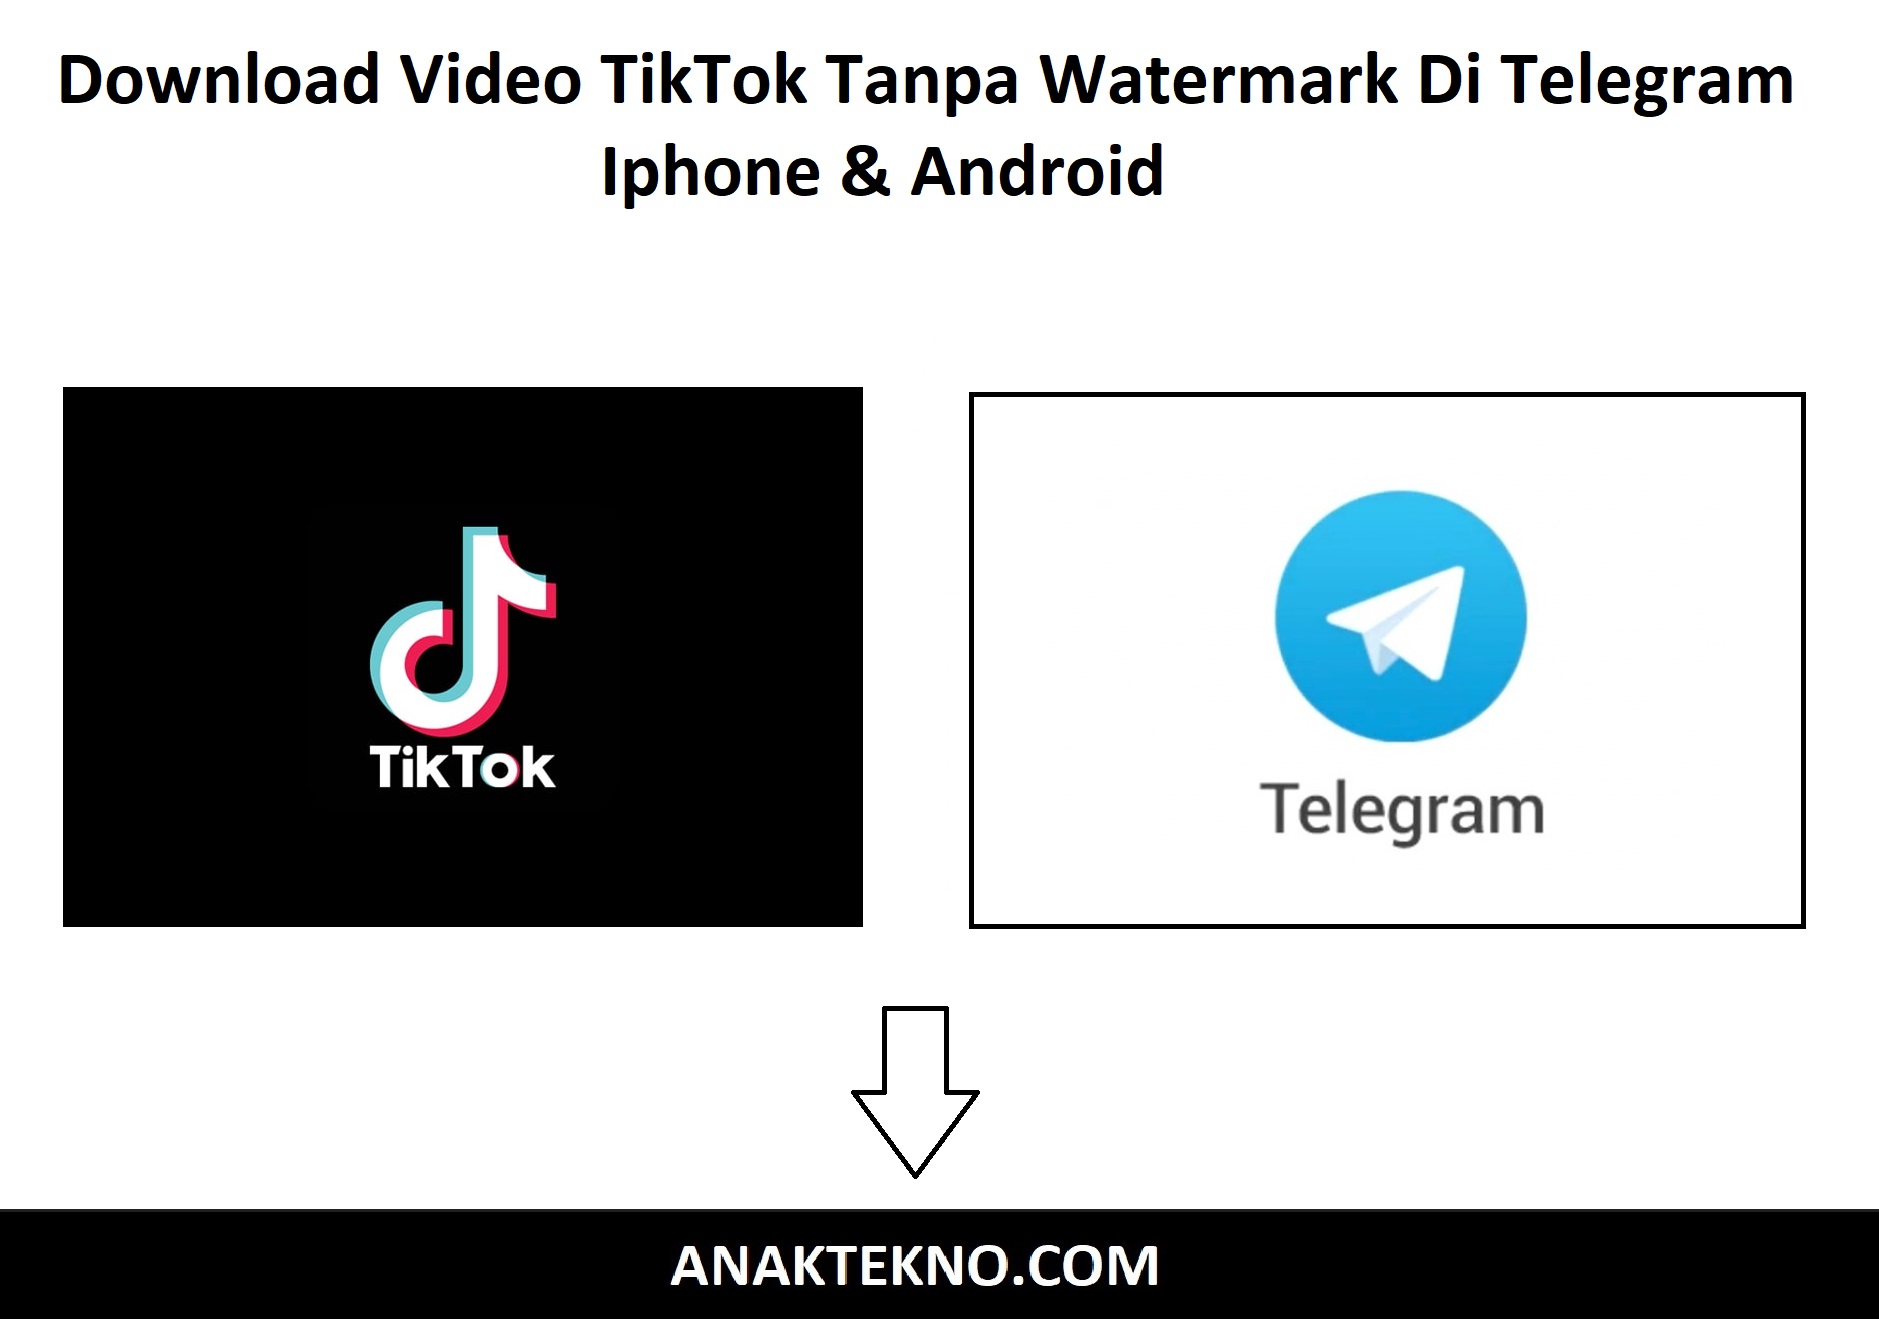 Download Video TikTok Tanpa Watermark Di Telegram Iphone & Android